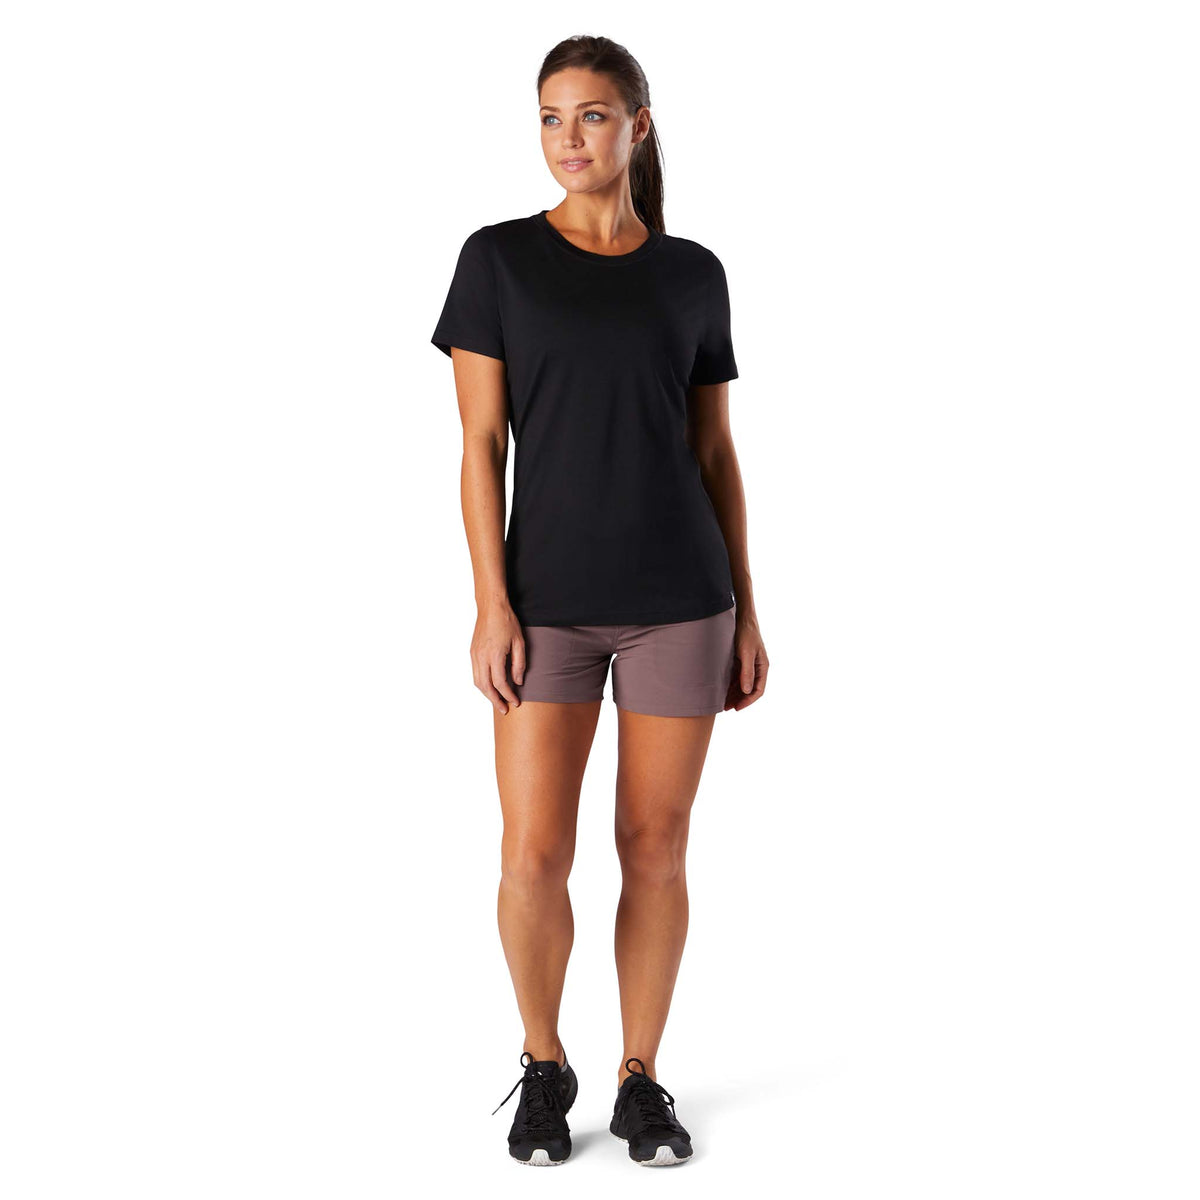 Smartwool Merino Sport 150 T-shirt noir femme face